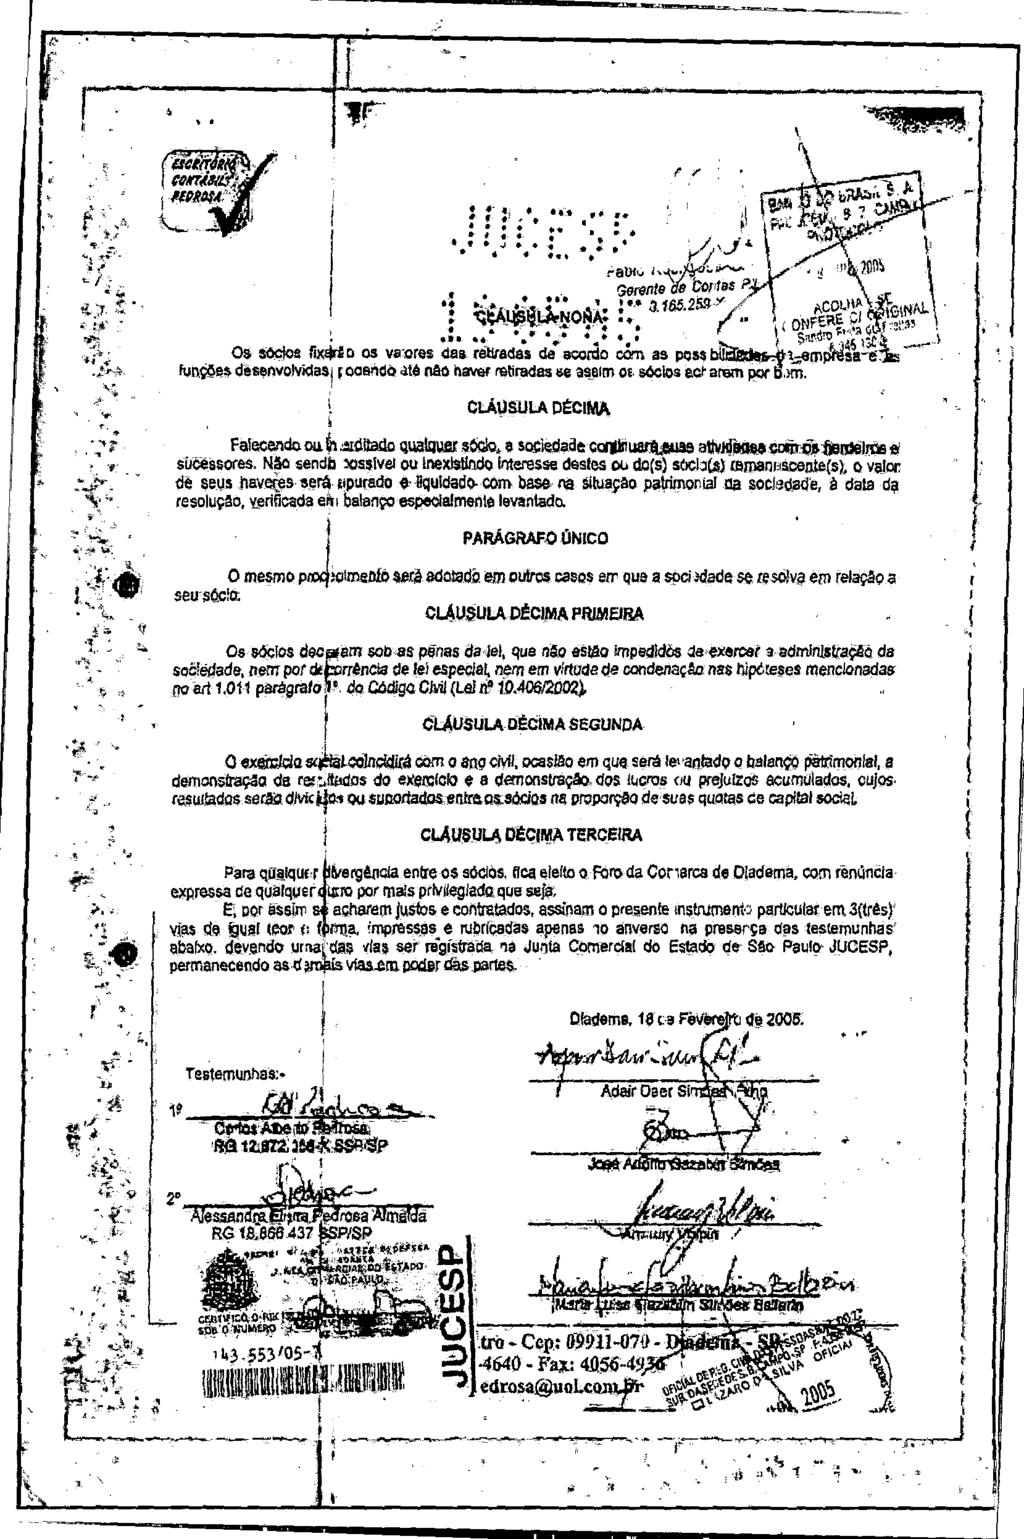 fls. 55 Este documento é cópia do original, assinado digitalmente por EDUARDO JANZON AVALLONE NOGUEIRA e Tribunal de Justica Sao Paulo, protocolado em 16/07/2015 às 09:43, sob o número